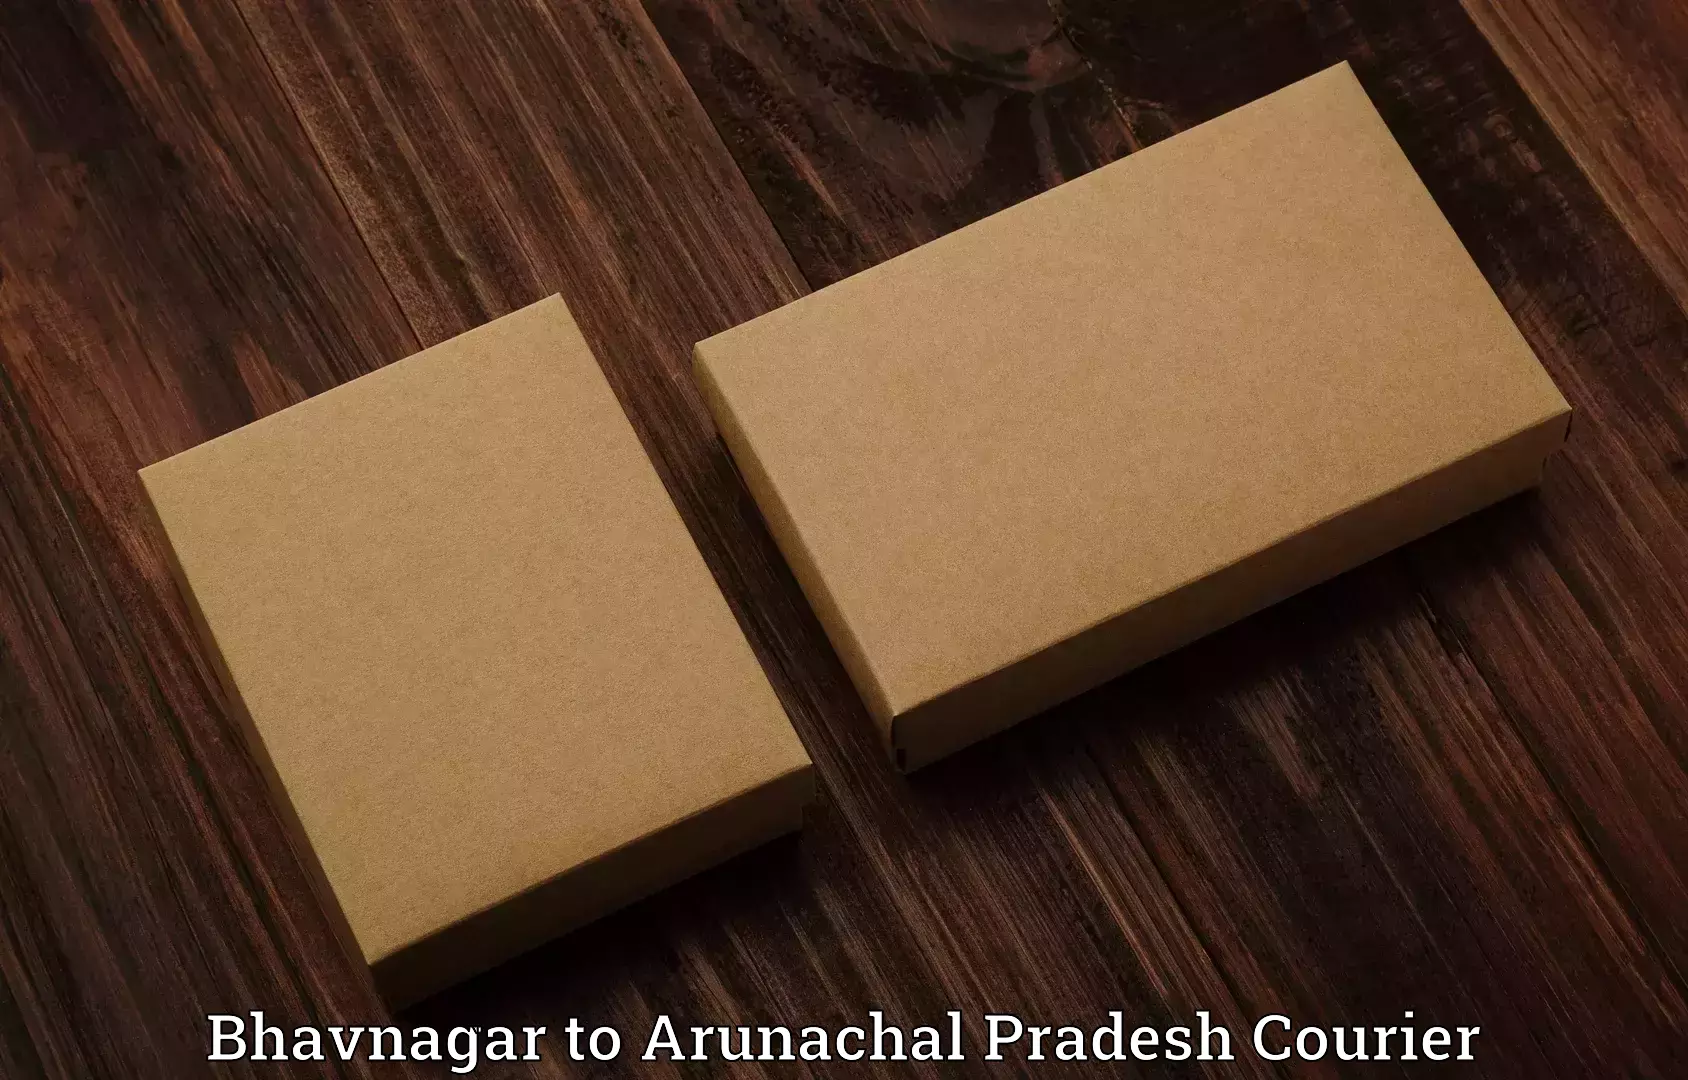 Luggage dispatch service Bhavnagar to Arunachal Pradesh